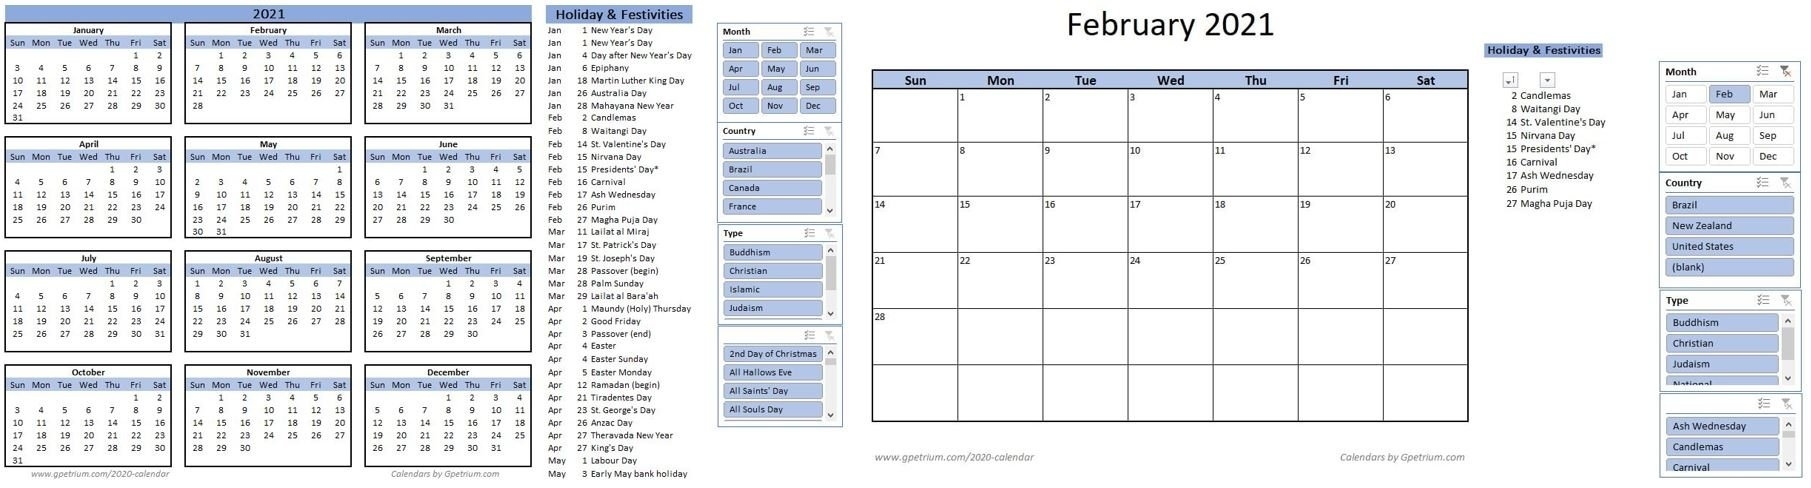 2021 Pto Calendar Template Excel • Printable Blank Calendar Template